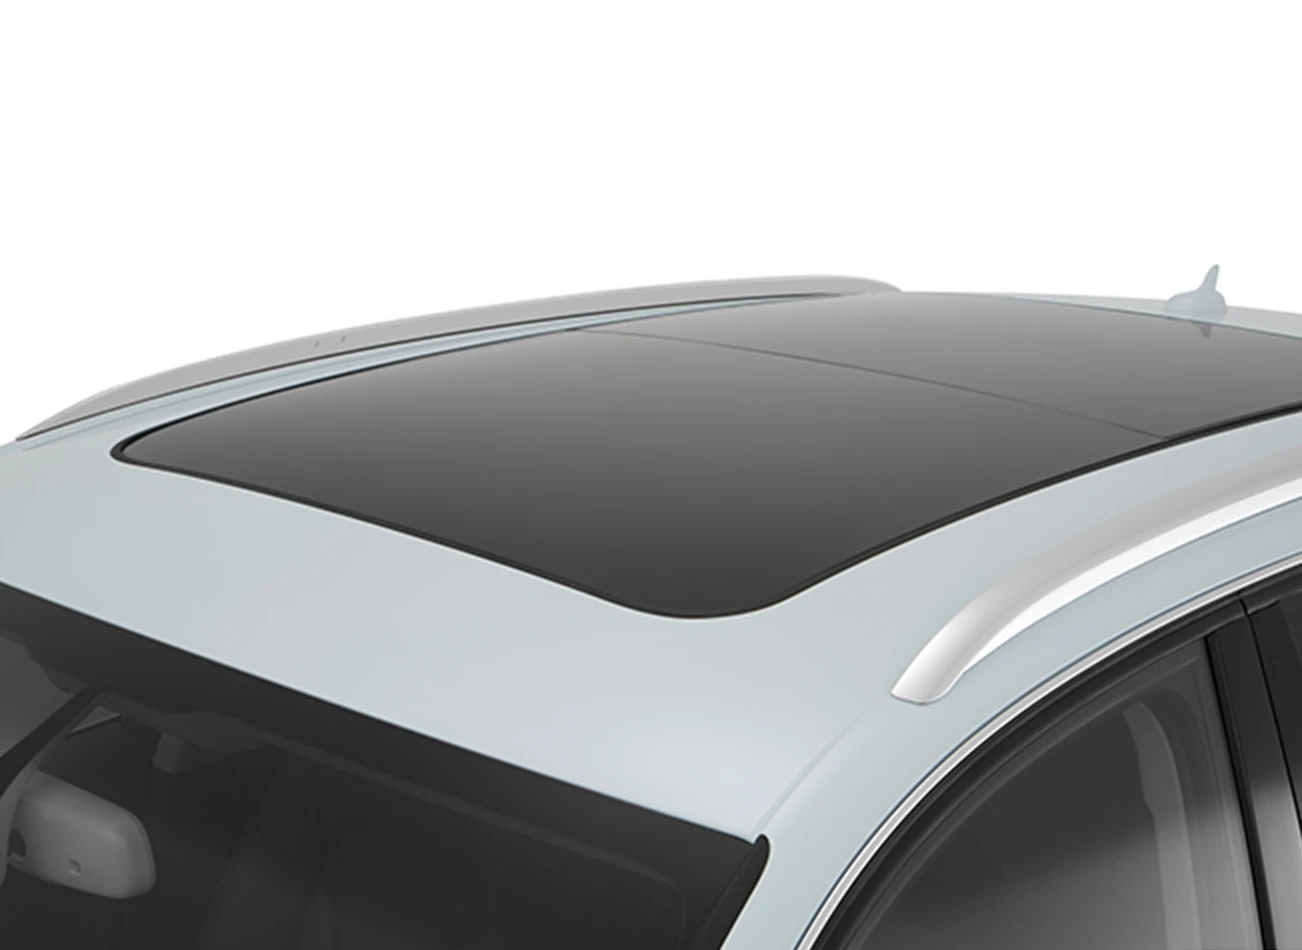 2016 Audi Q5 Review: Panoramic Sunroof | CarMax